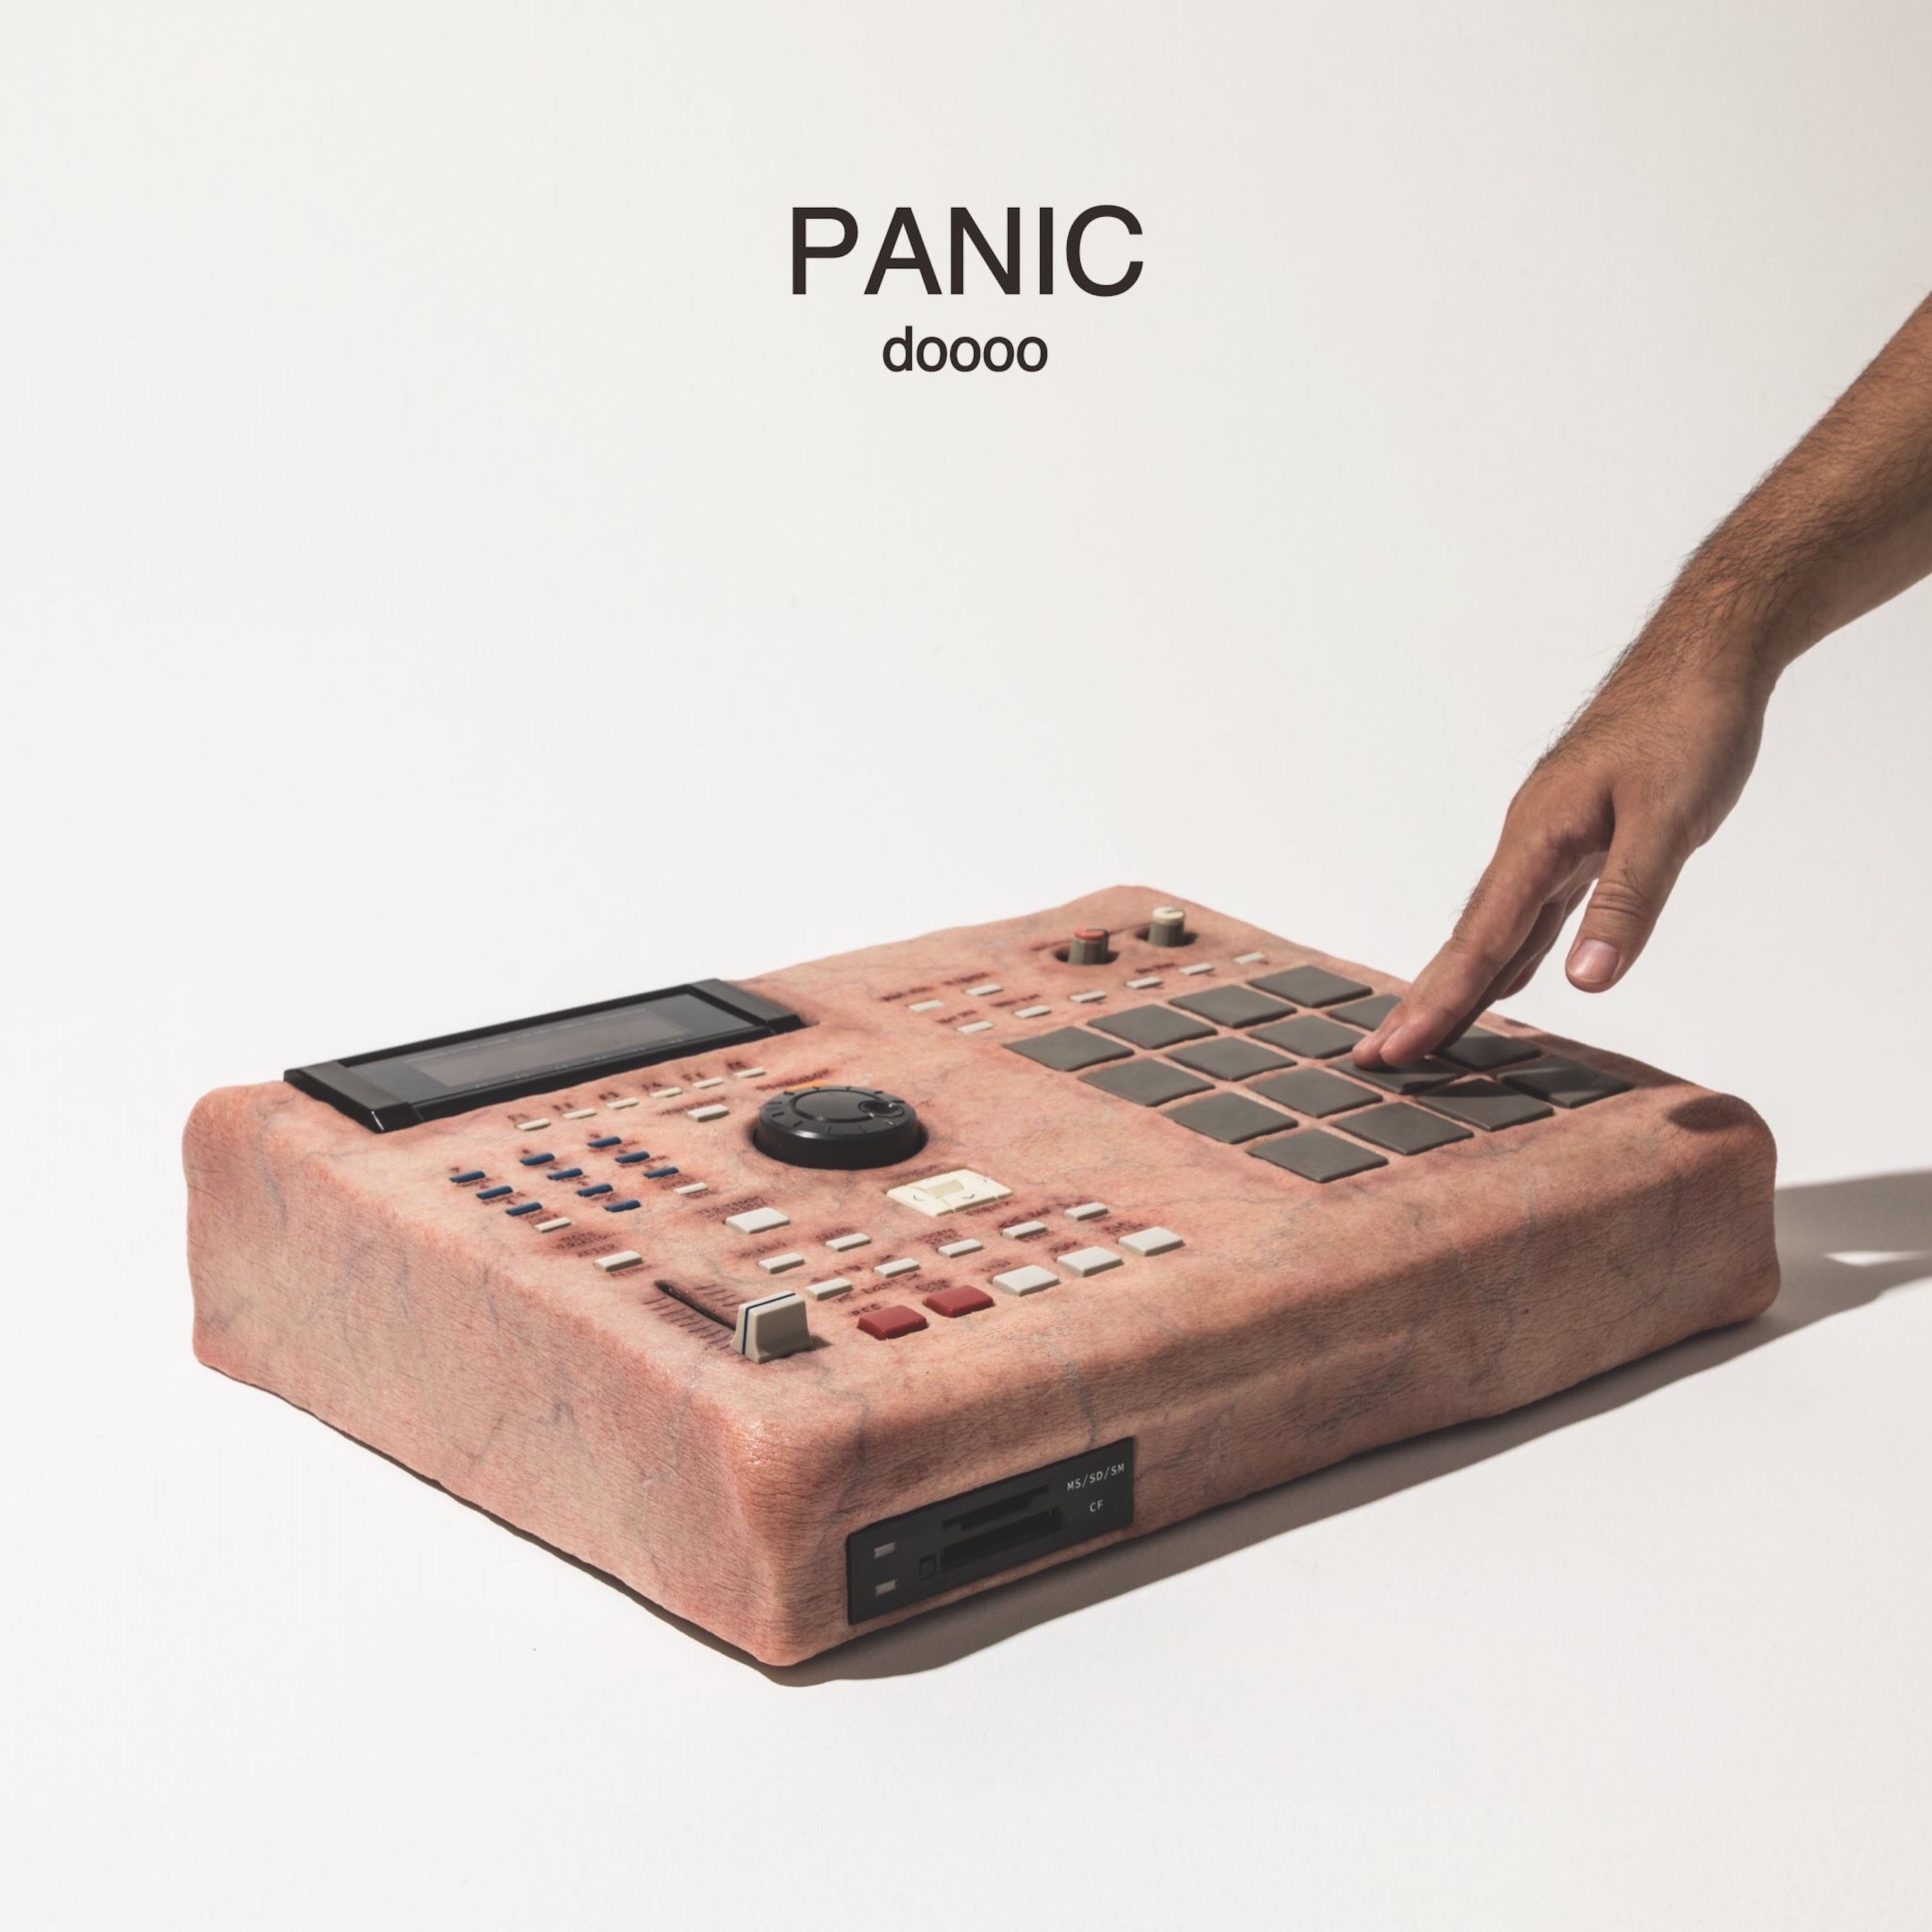 doooo "PANIC" Release Party